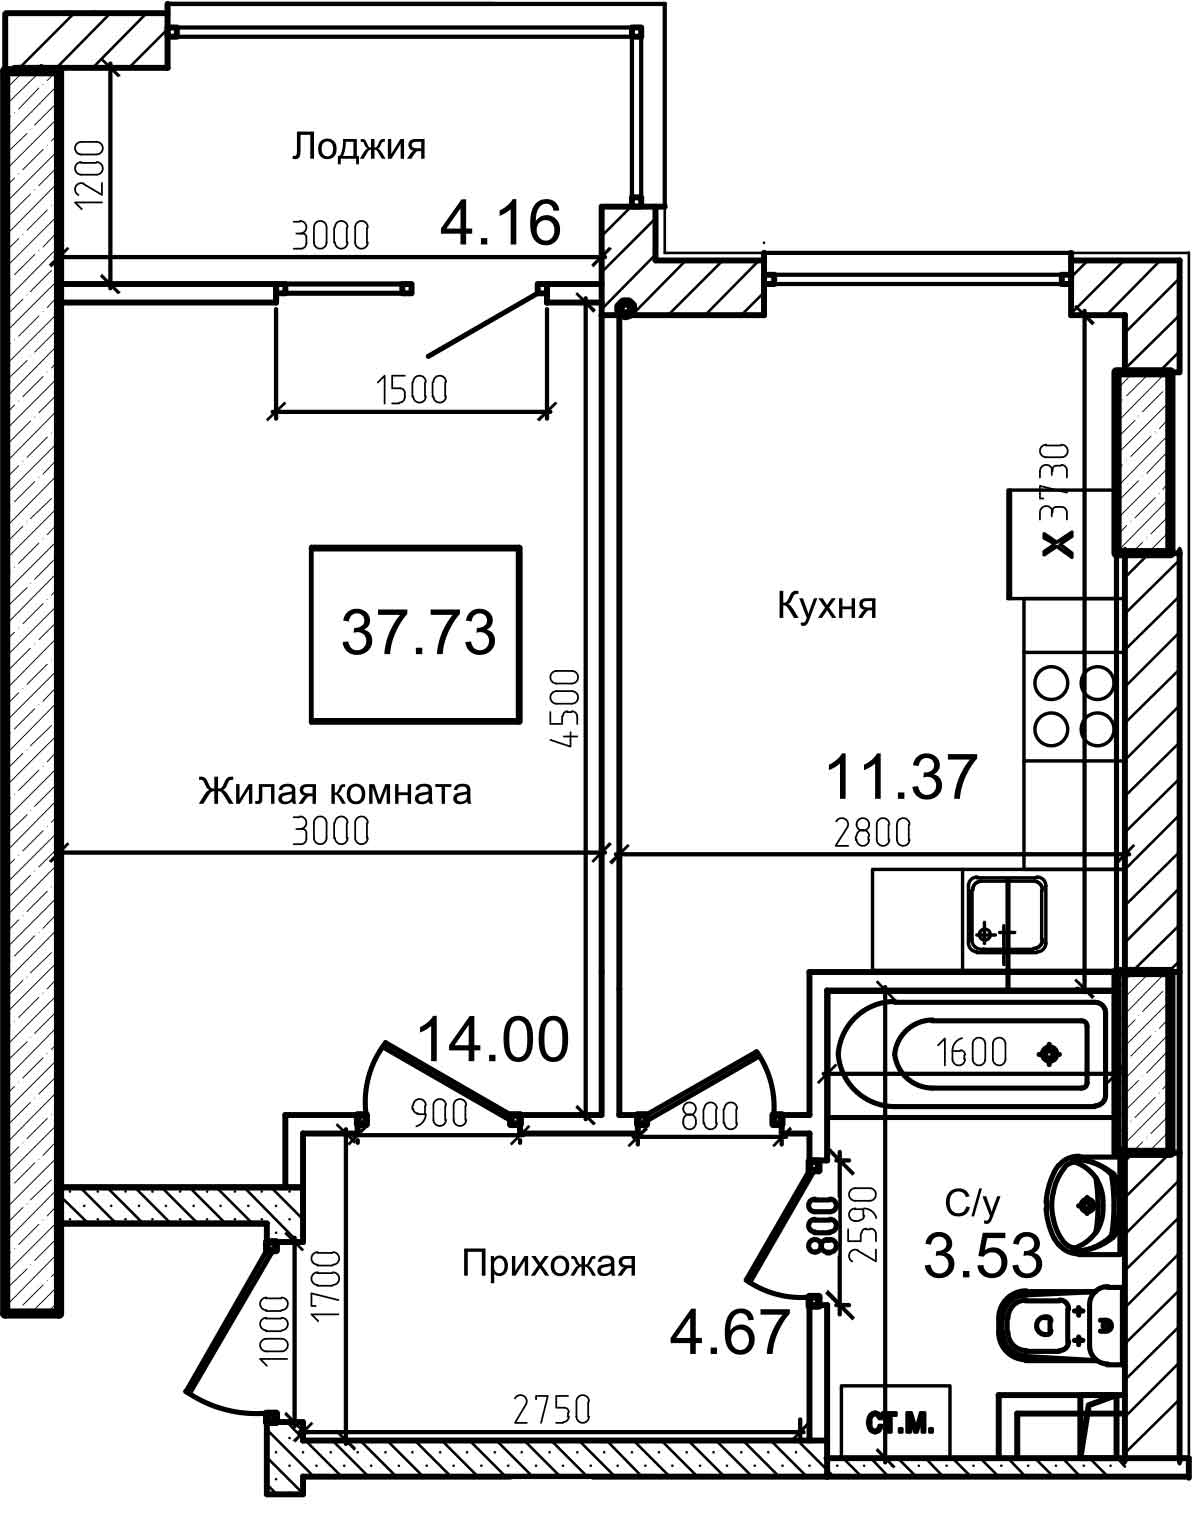 Планування 1-к квартира площею 37.6м2, AB-08-09/00011.